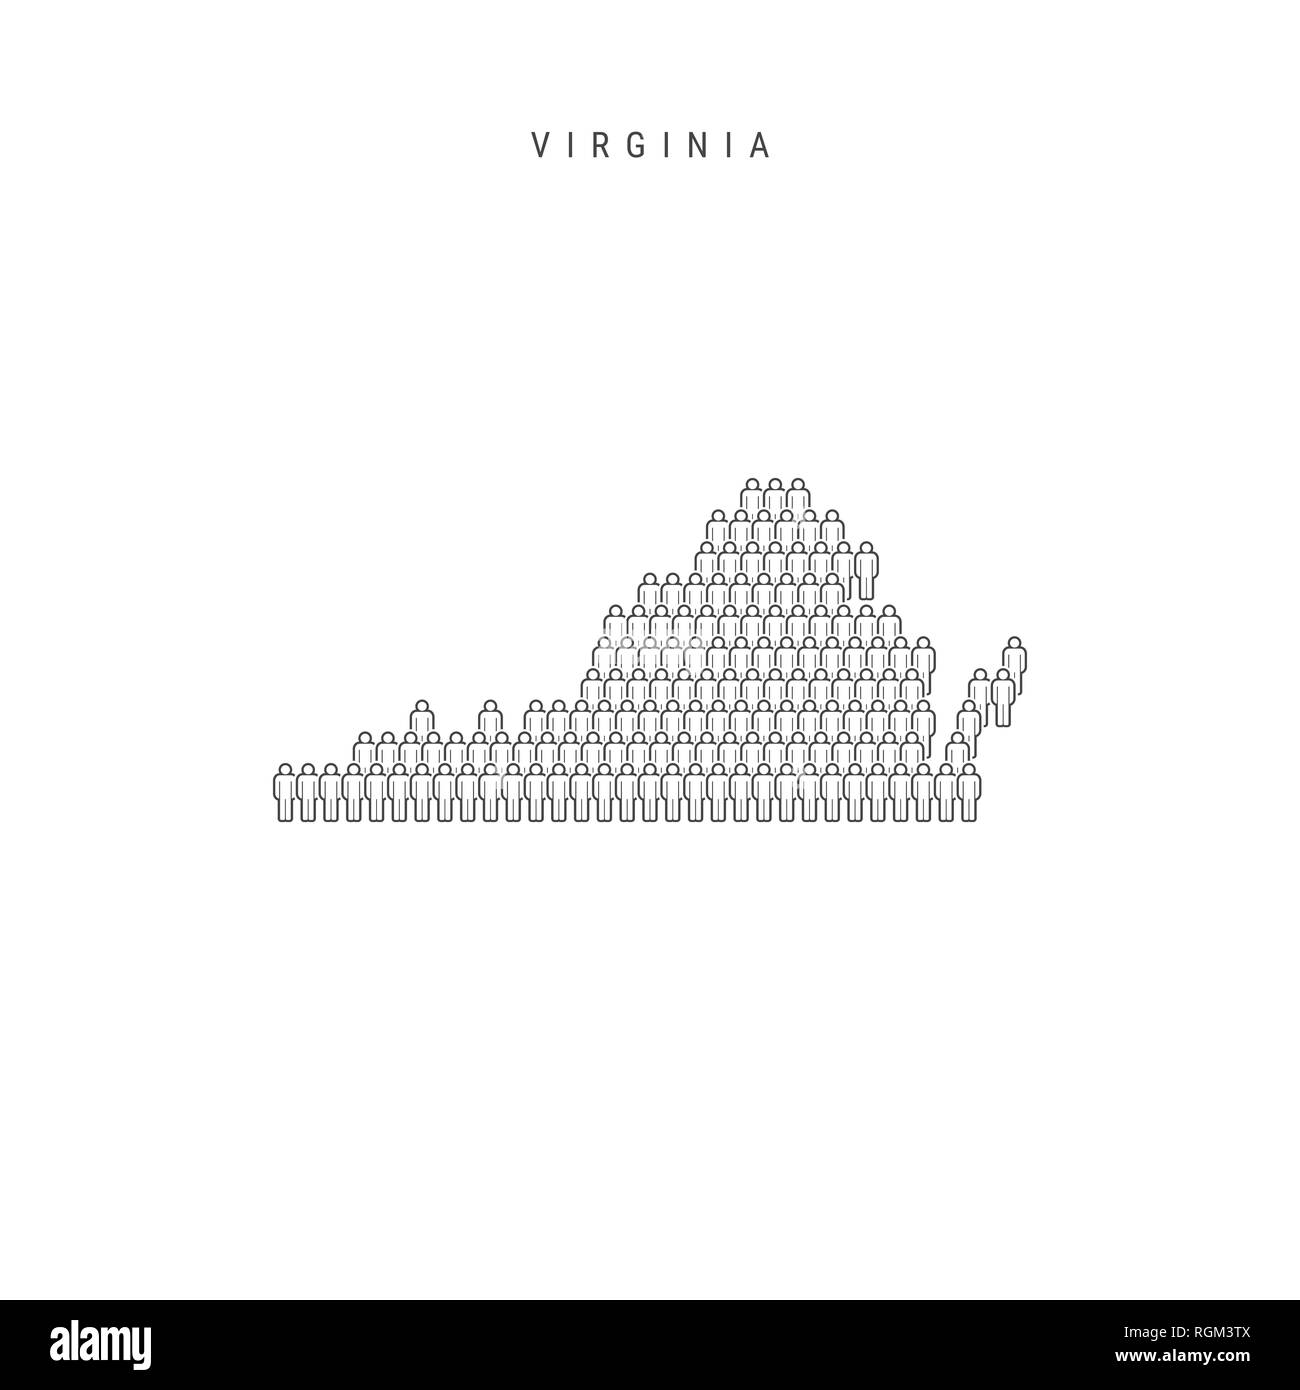 Leute Karte von Virginia, US-Staat. Stilisierte Silhouette, Leute in der Form einer Karte von Virginia. Virginia Bevölkerung. Abbildung isoliert auf W Stockfoto